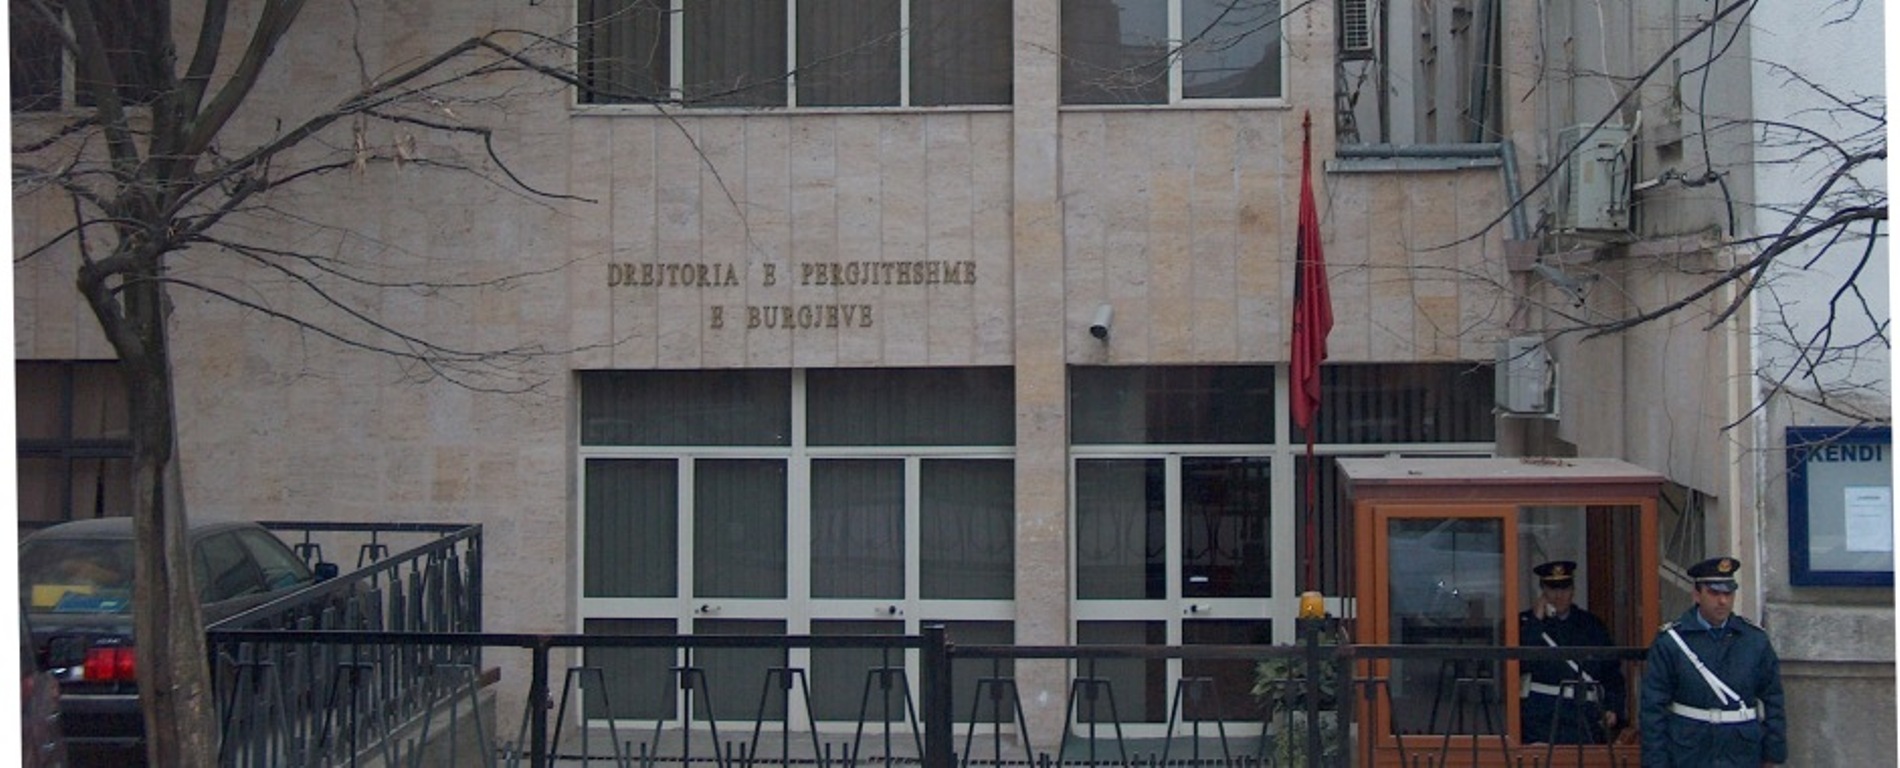 Tiranë, ndalohen 4 efektivë të Drejtorisë së Përgjithshme të Burgjeve